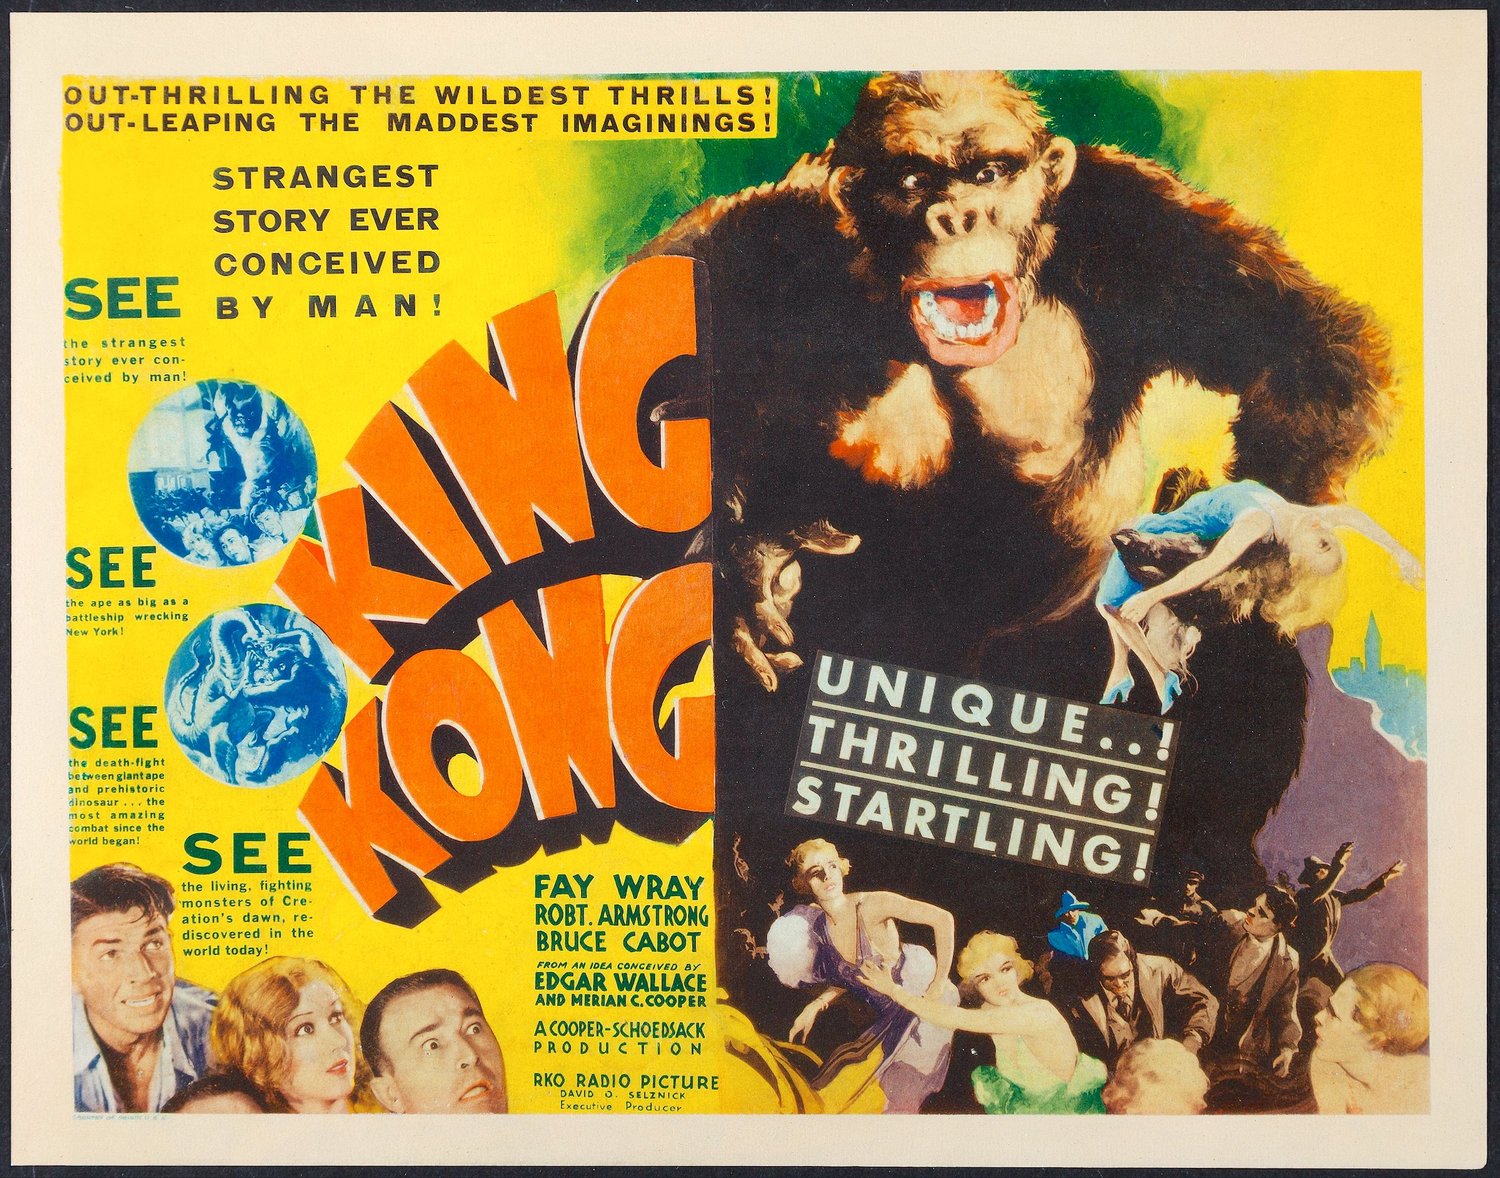 The Capitol will screen “King Kong” (RKO, 1933) Friday at 9:05 p.m.